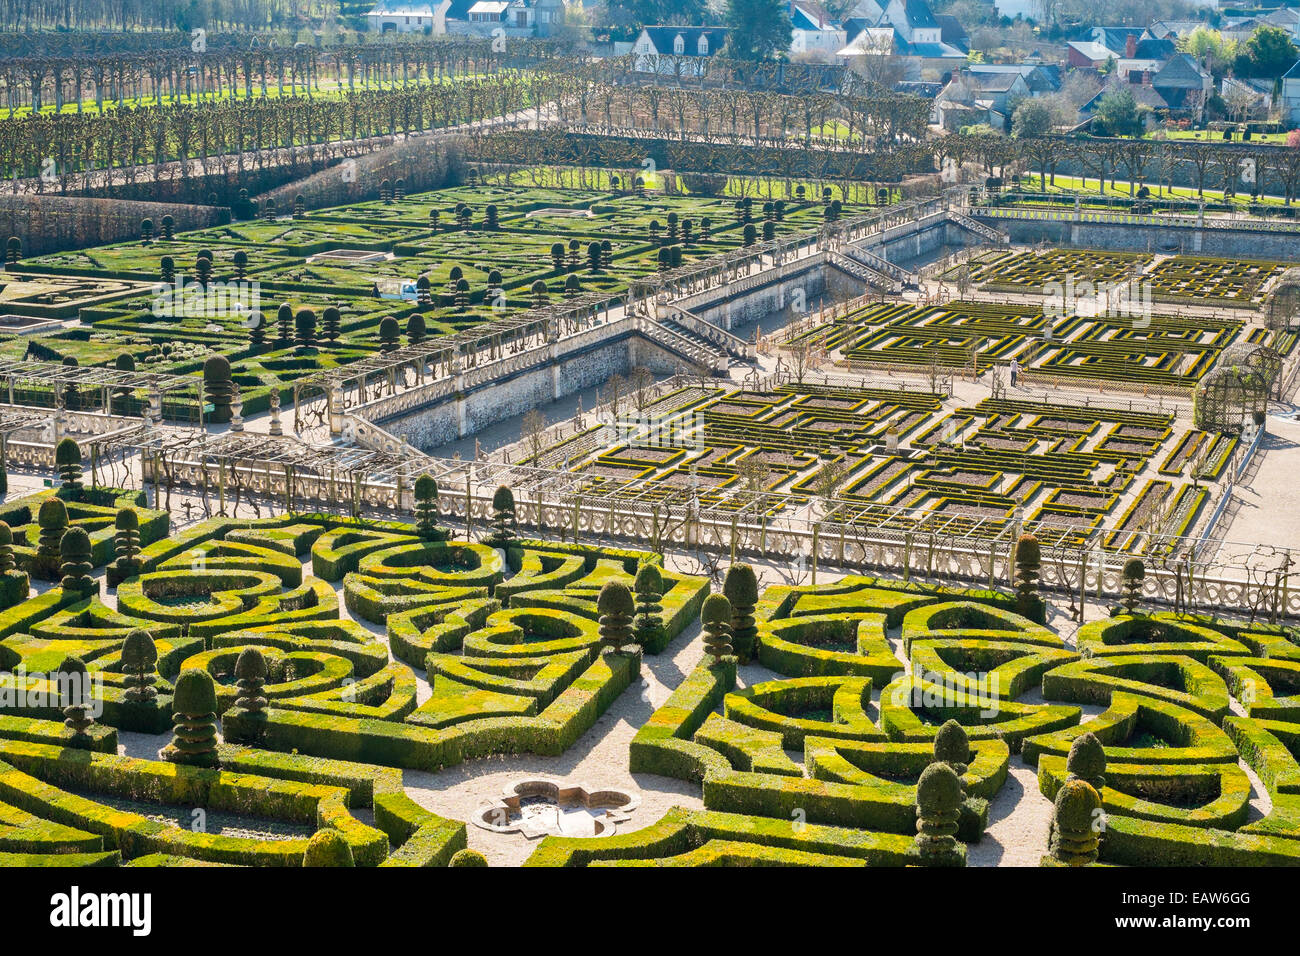 Formal gardens at Chateau de Villandry, Villandry, Indre-et-Loire, Centre, France Stock Photo